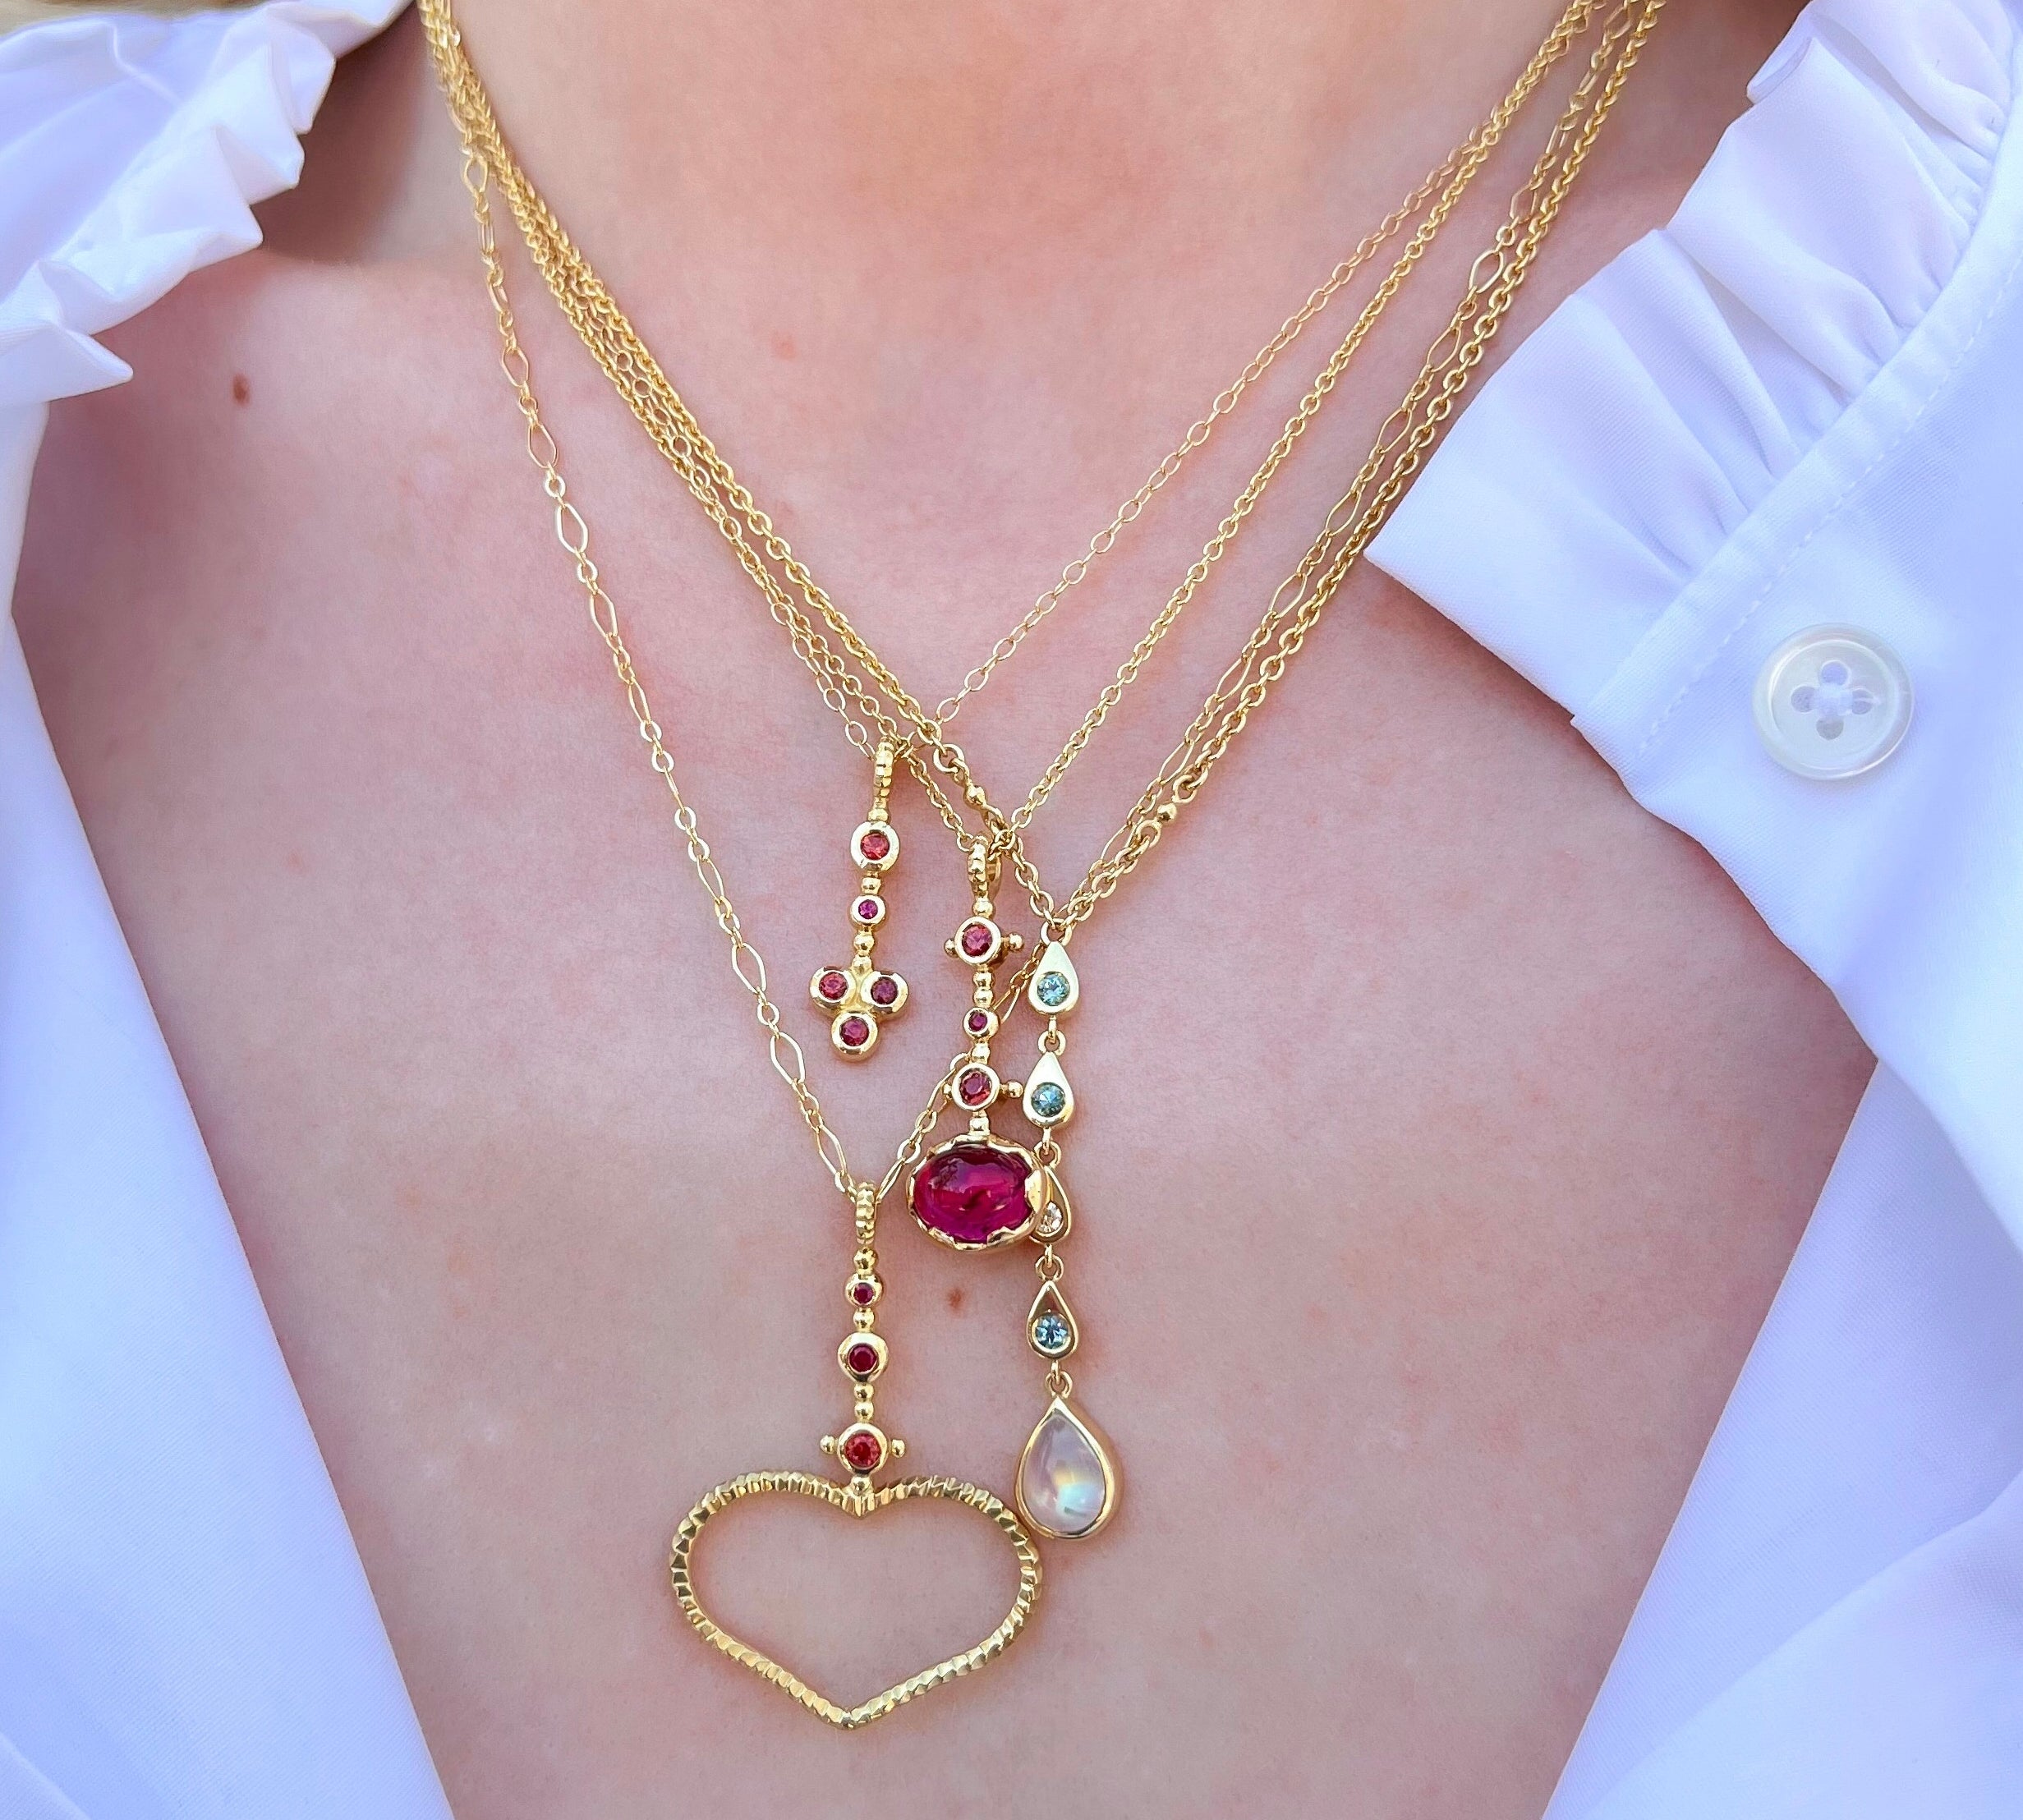 Sceptre Heart Pendant Necklace Pendant Svetlana Lazar   